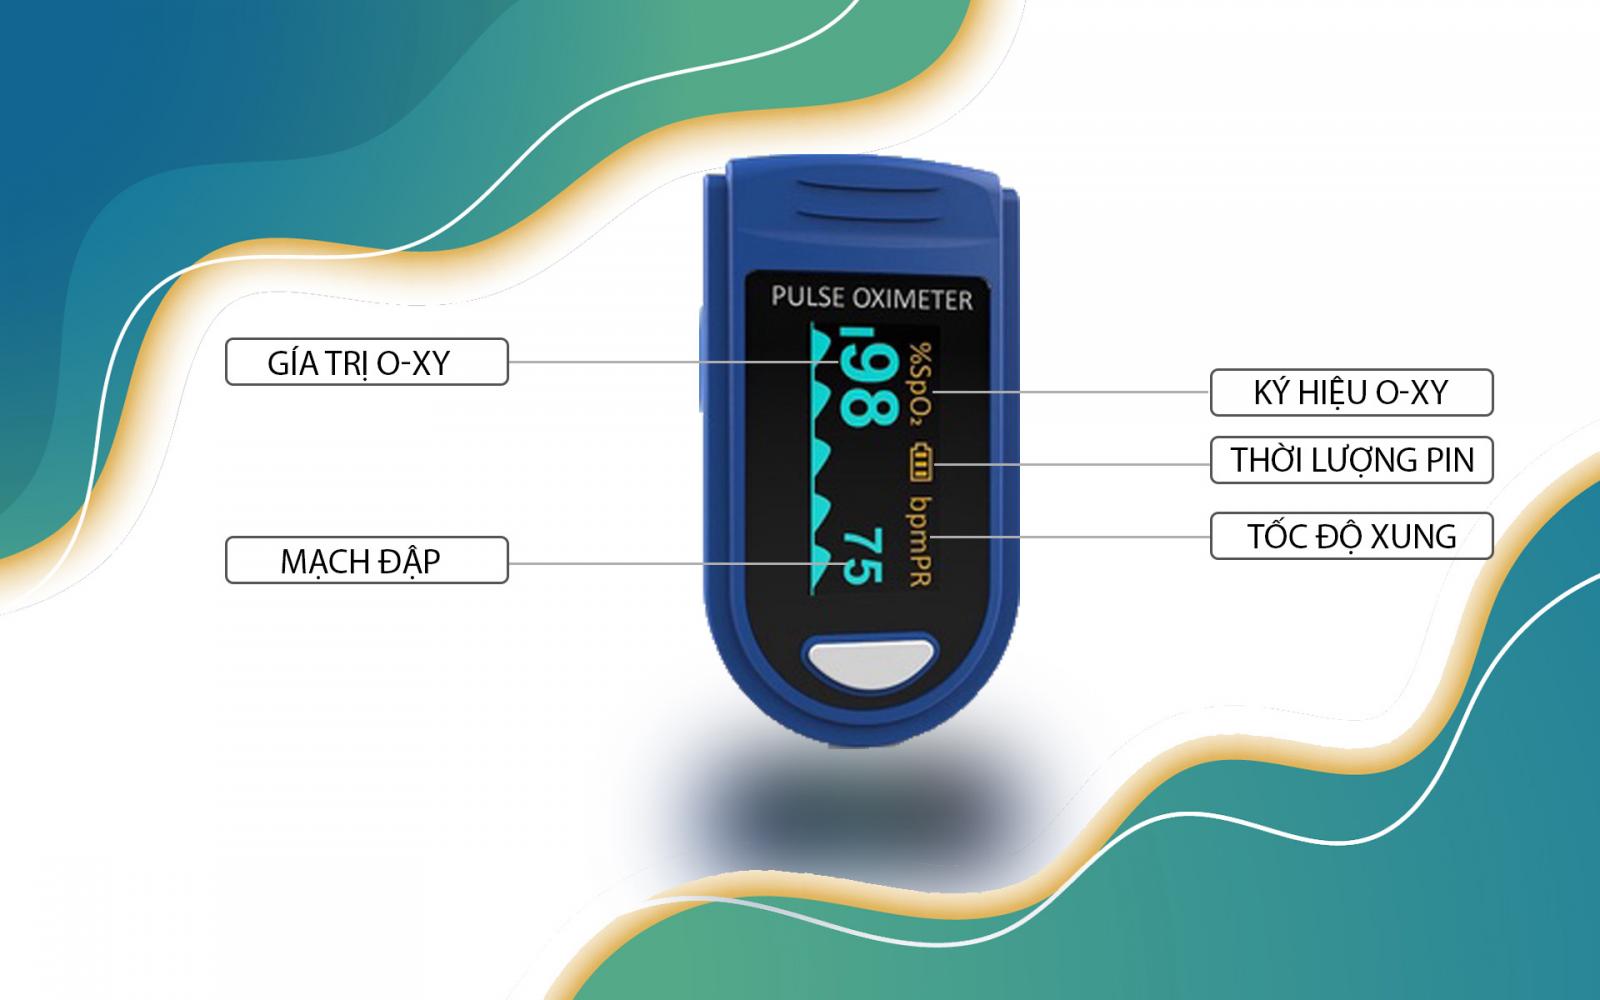 Máy đo nồng độ o-xy trong máu Jumper 500C được nhập khẩu chính hãng và có chứng nhận của FDA